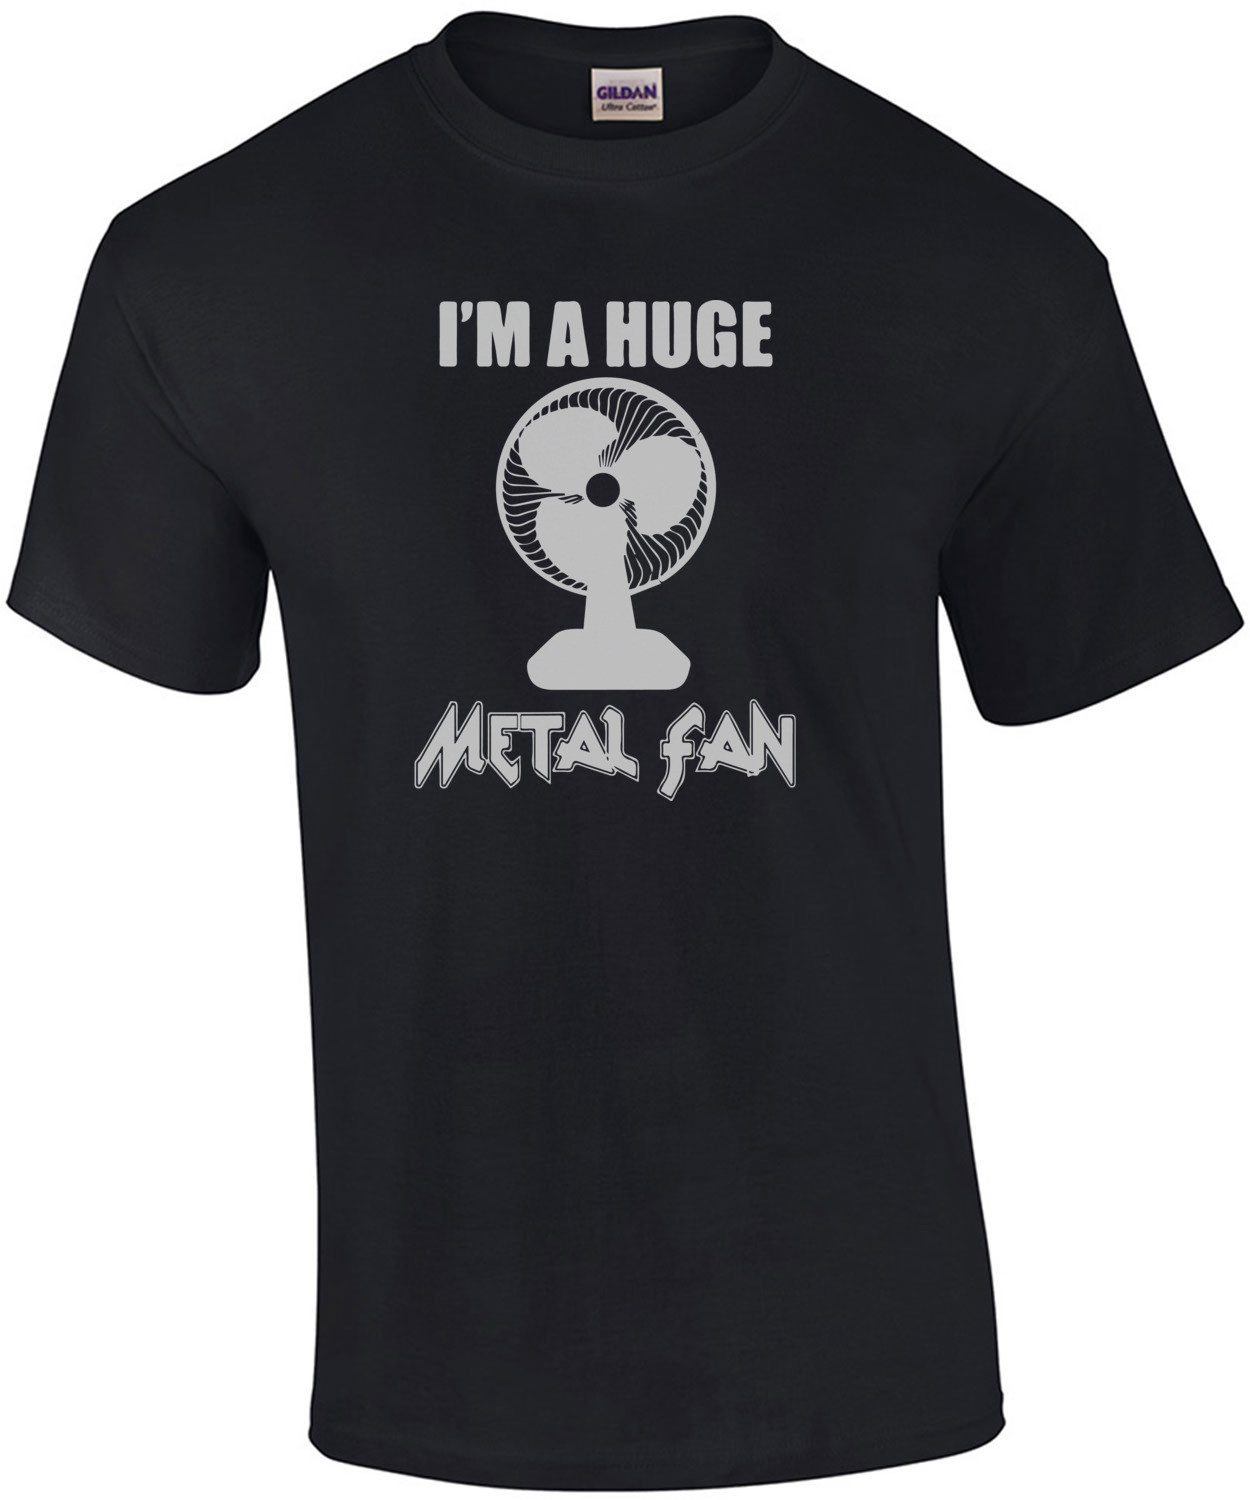 I'm a huge metal fan